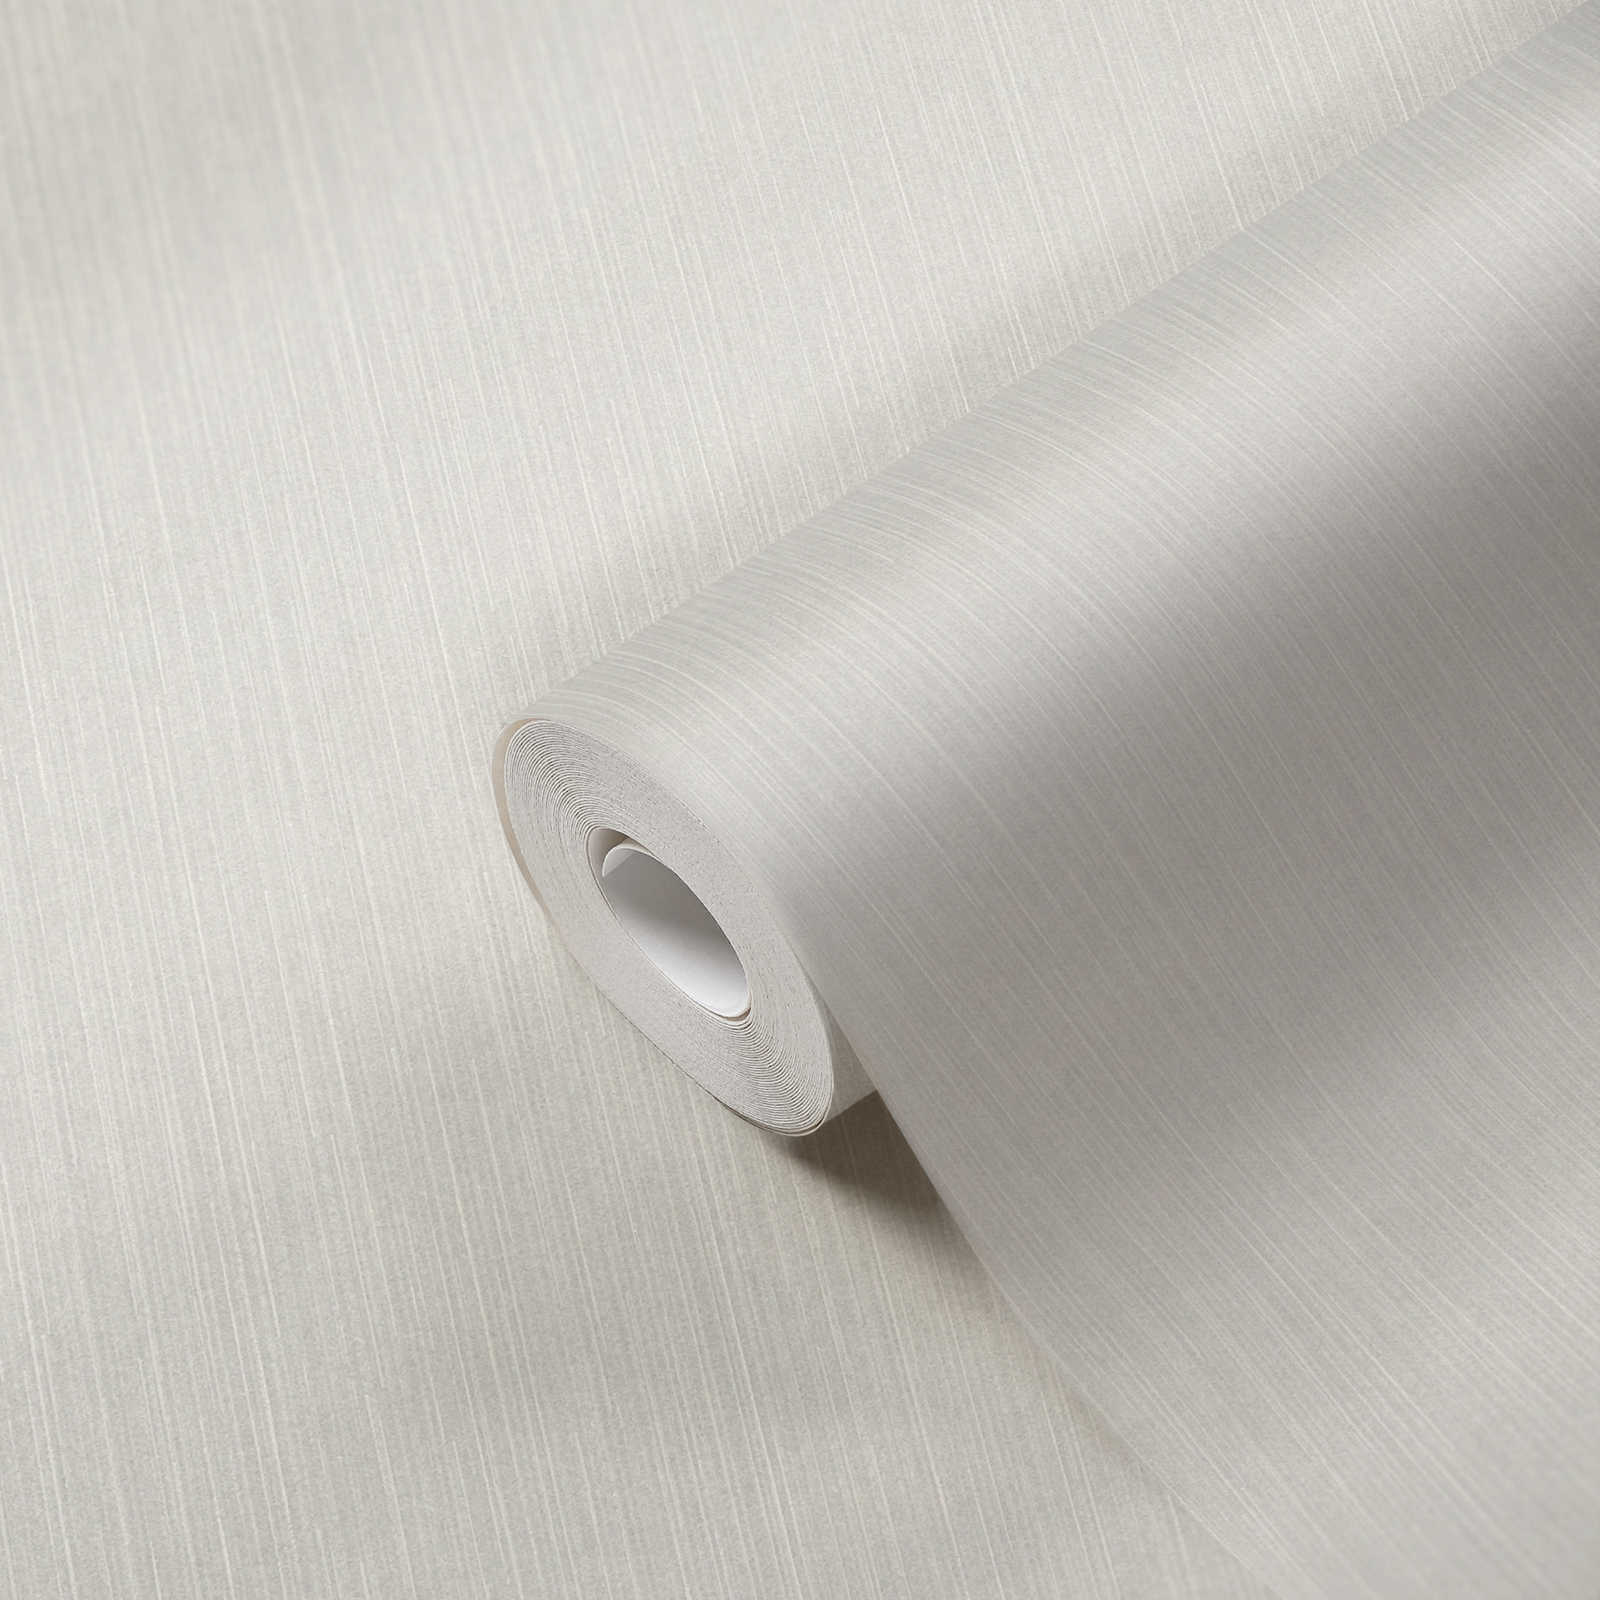             Papier peint intissé blanc avec effet scintillant & design de lignes - blanc, gris
        